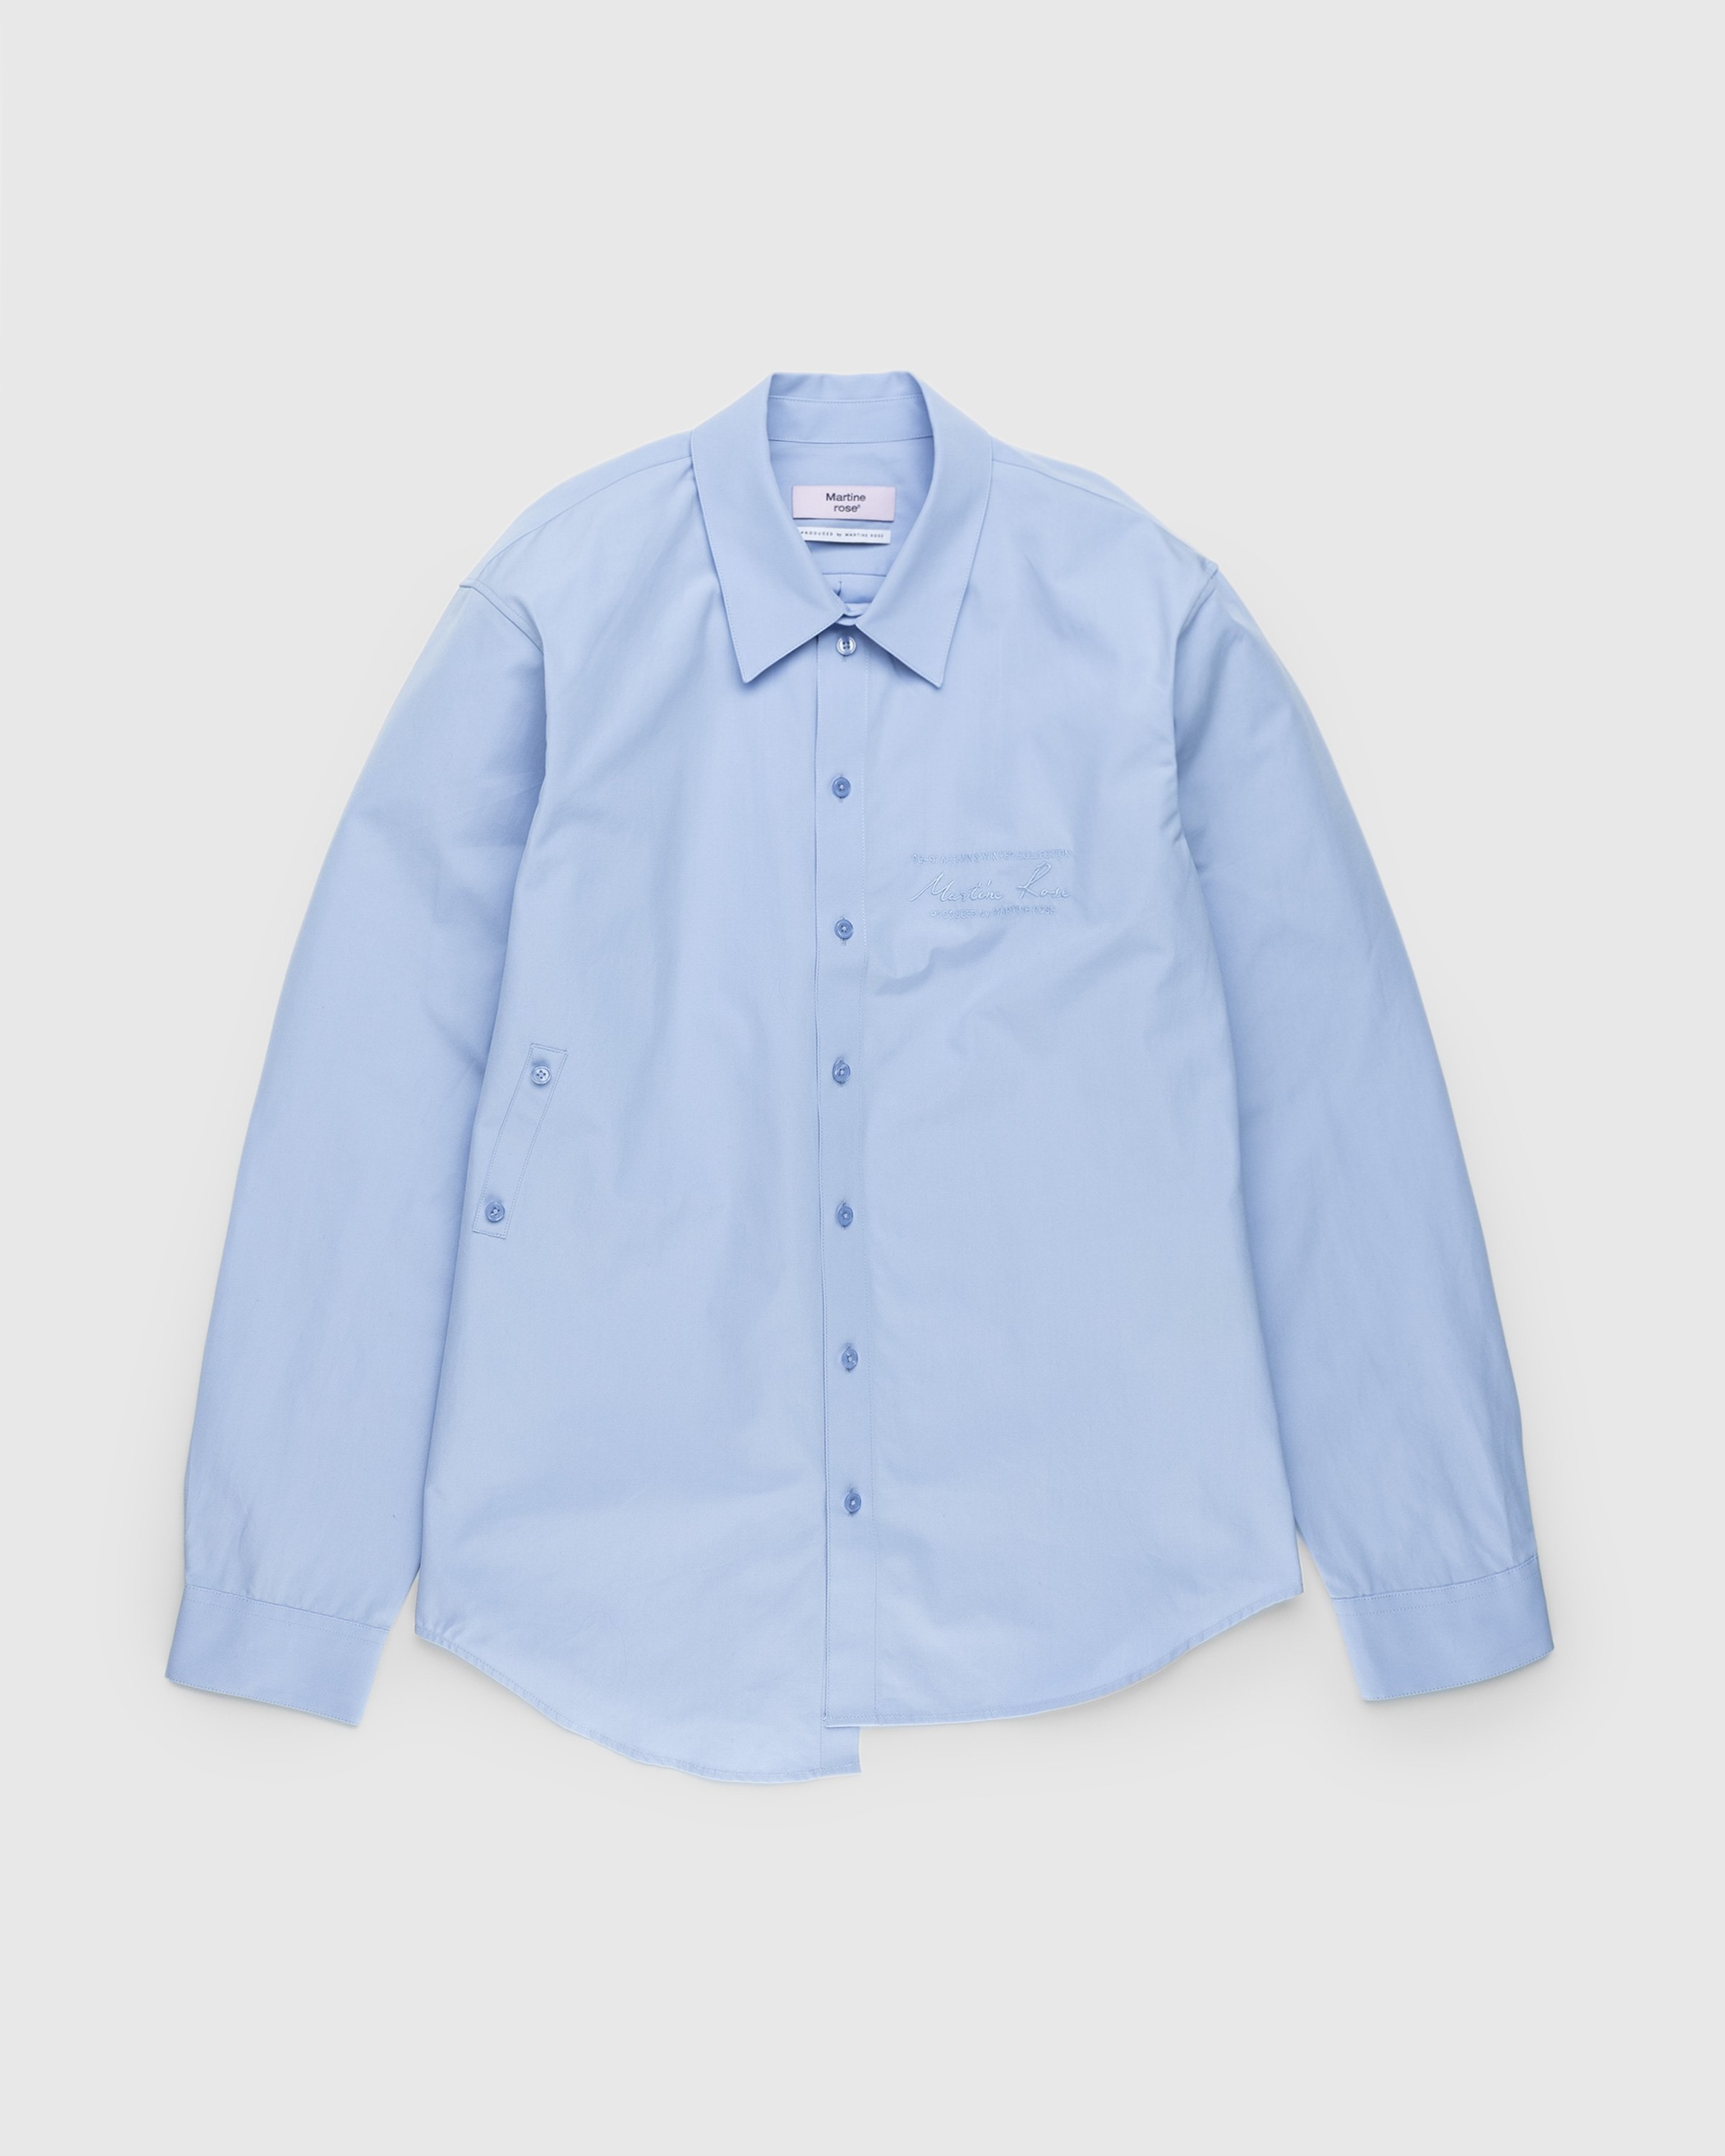 Martine Rose - Wrap Shirt Blue - Clothing - Blue - Image 1